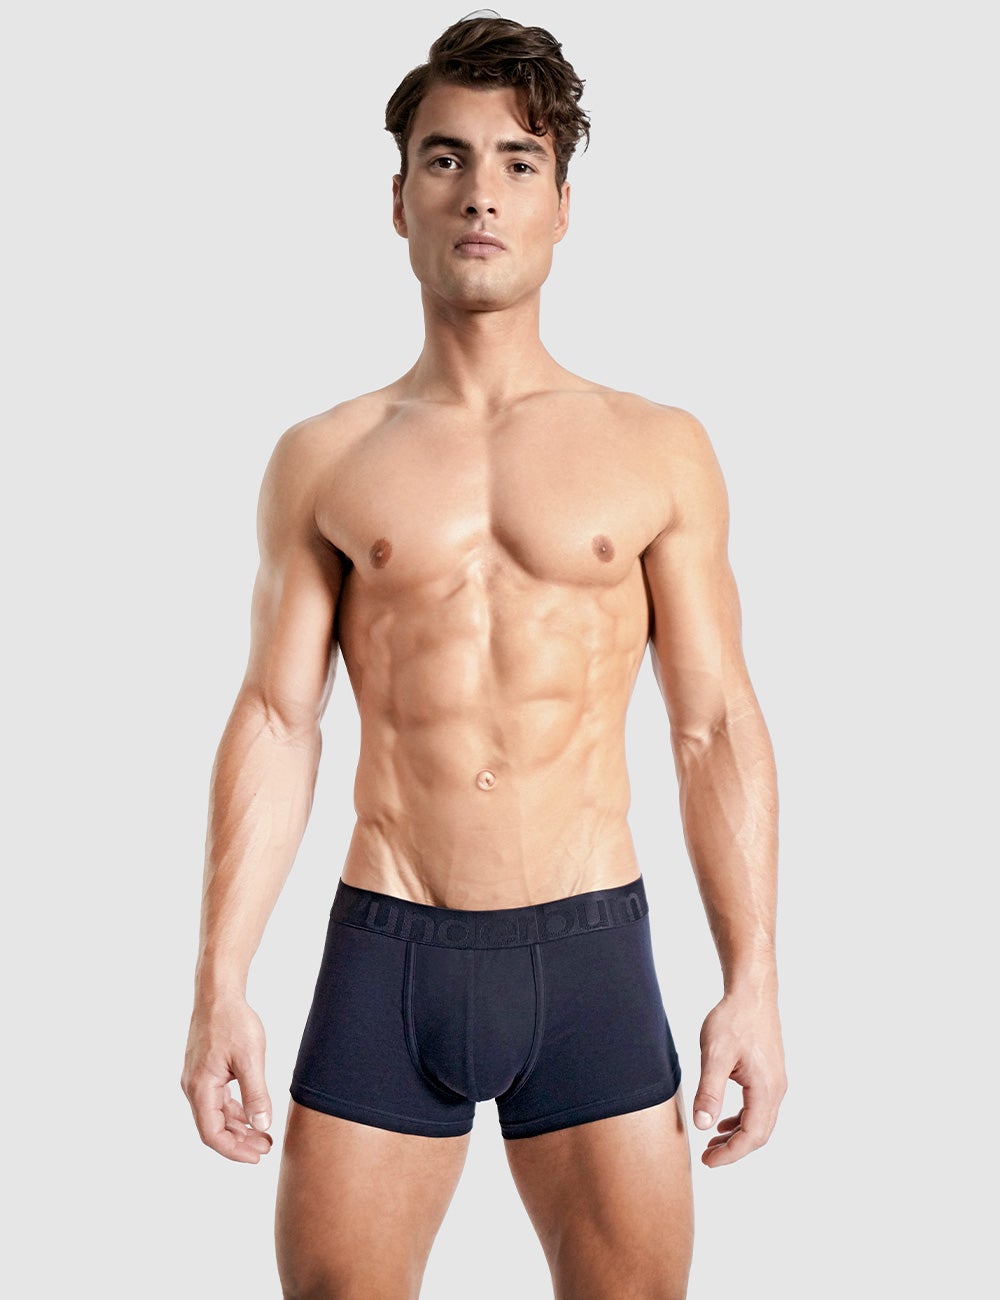 GetUSCart- True Religion Mens Boxer Briefs - Trunks Underwear for